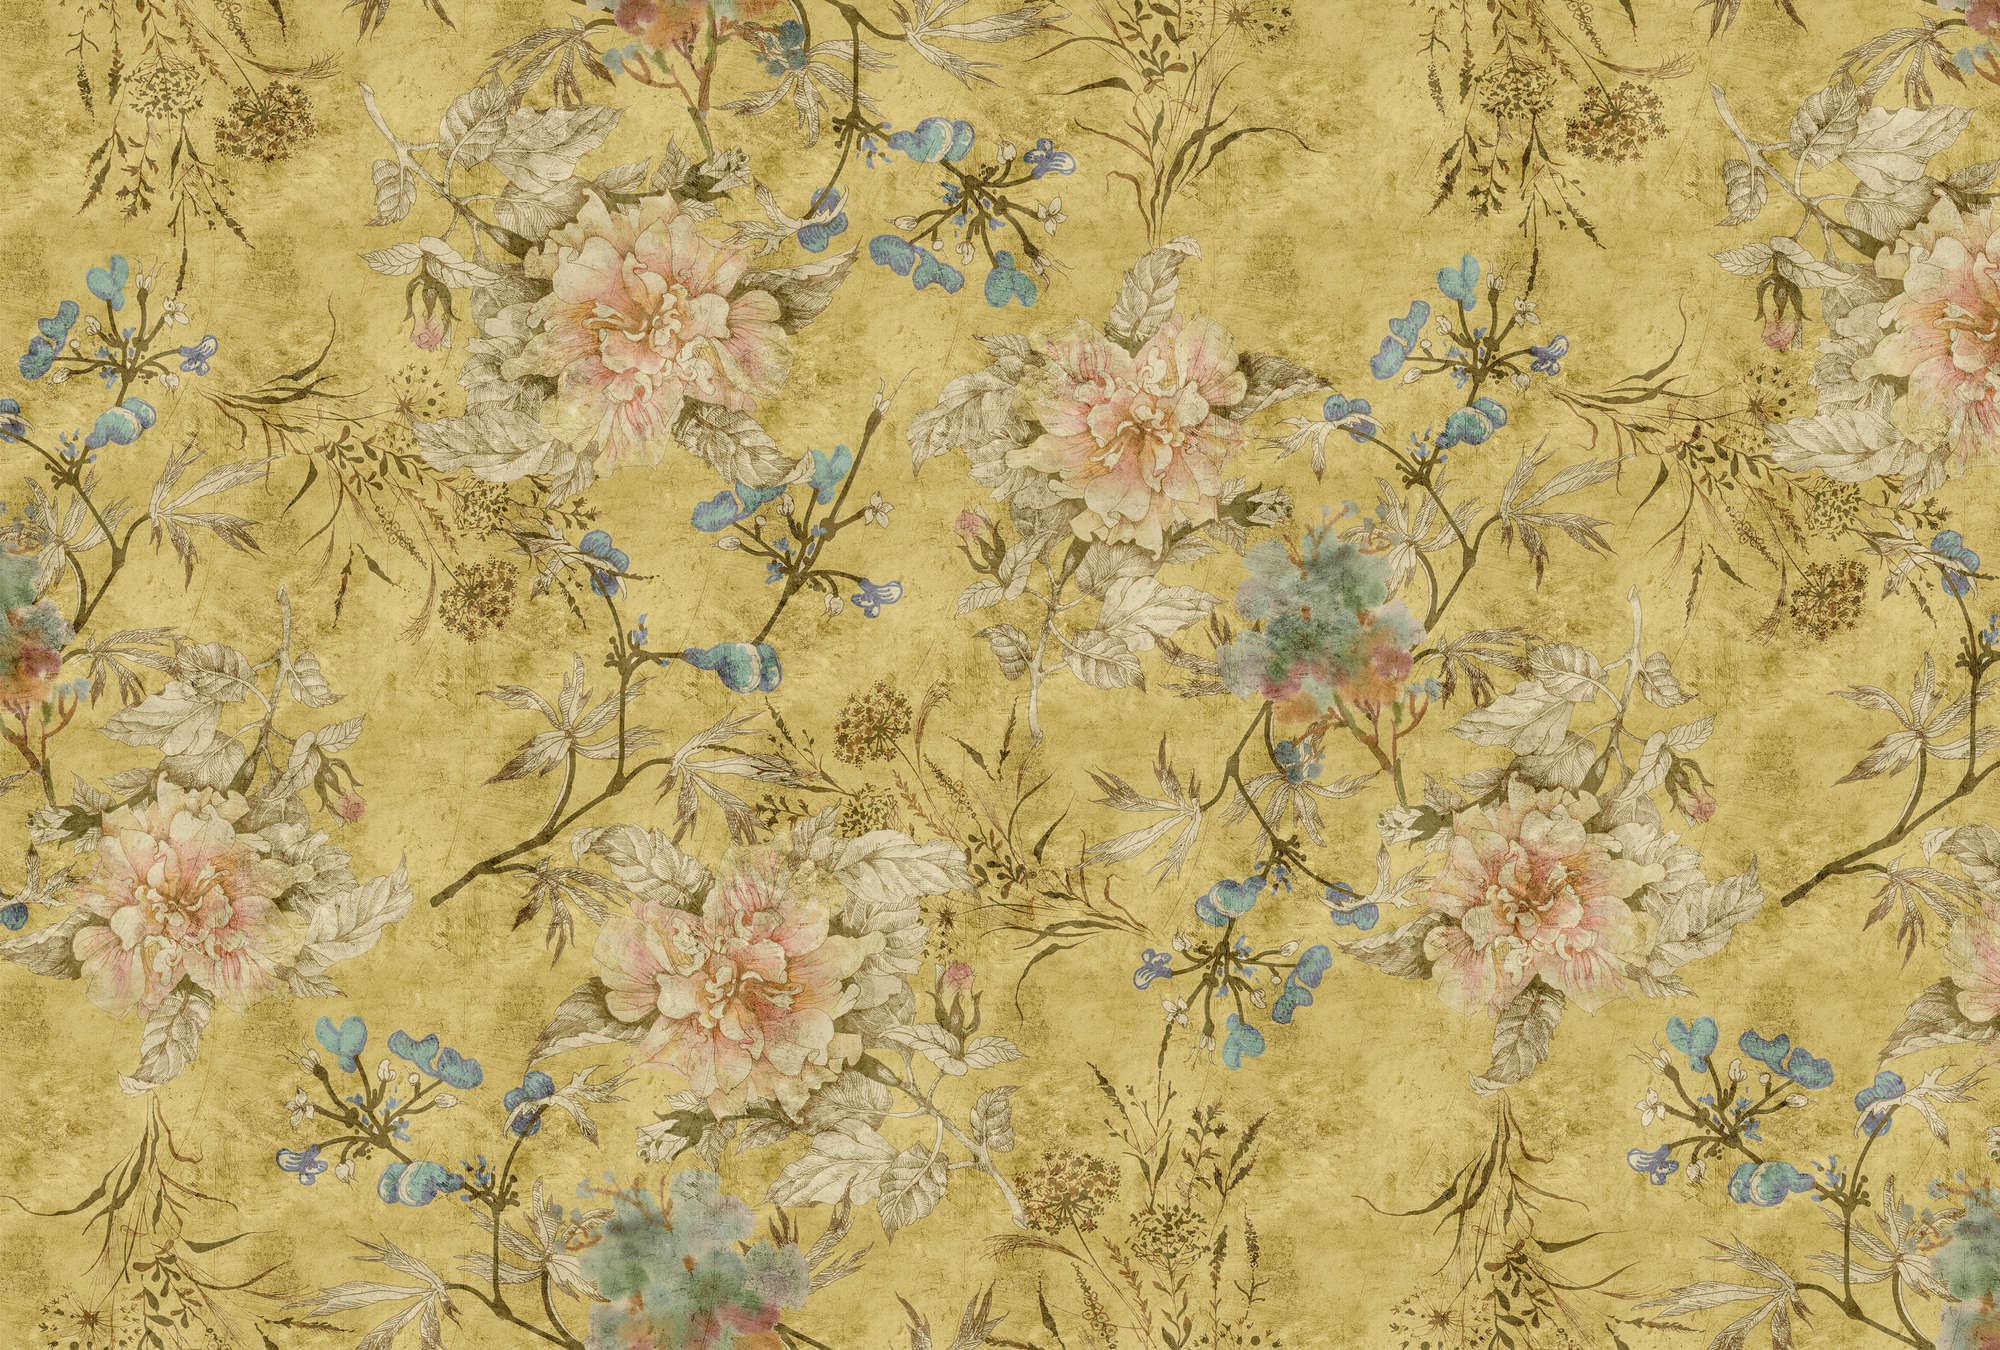             Tenderblossom 2 - Papier peint fleuri vintage - texture grattée - jaune | texture intissé
        